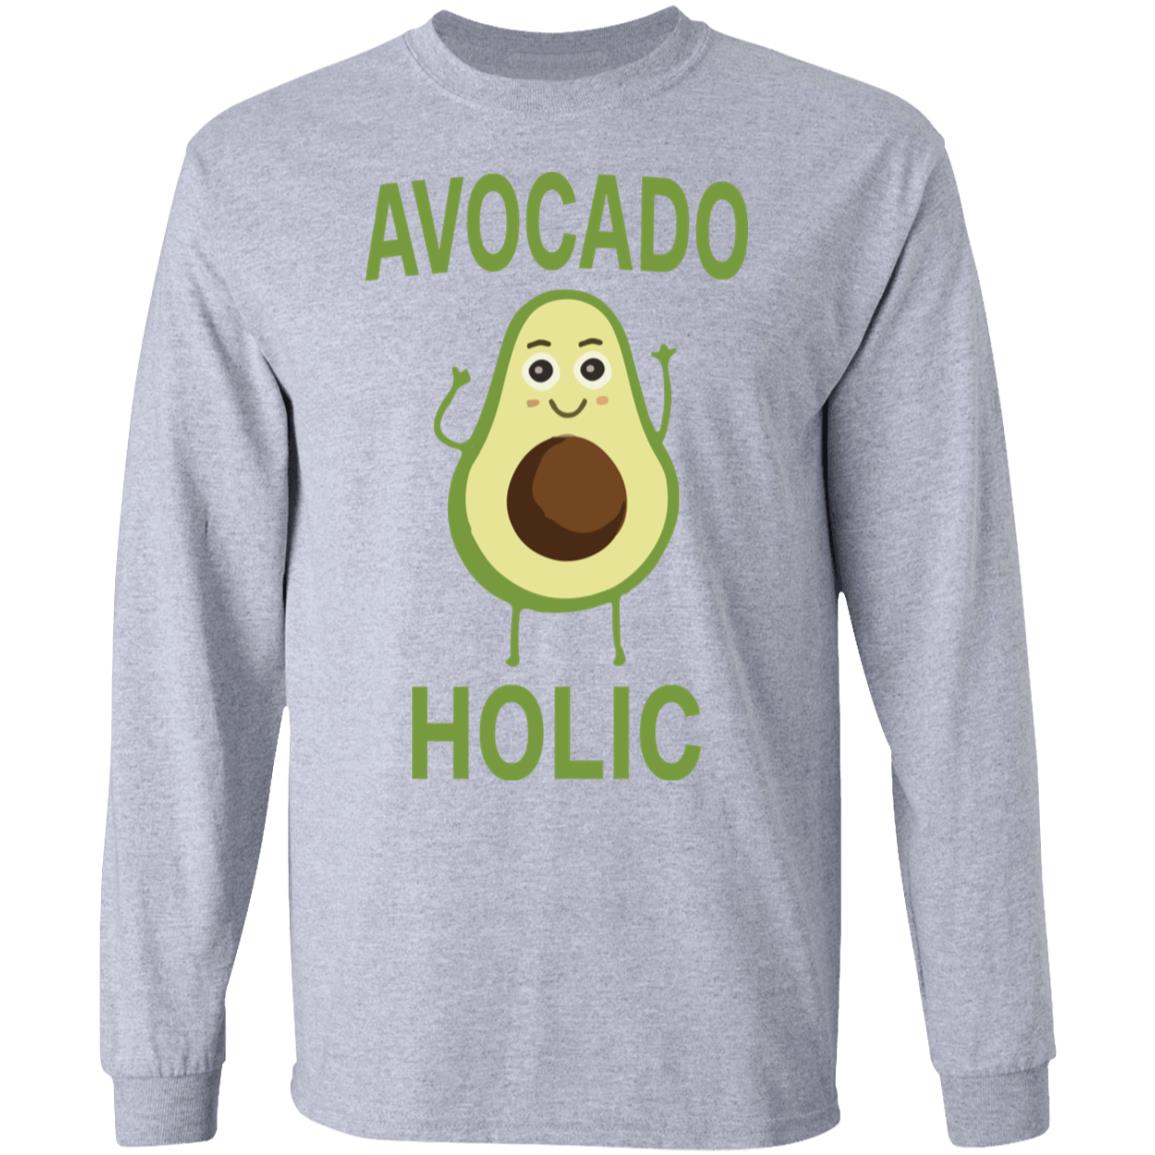 Avocado holic shirt, hoodie